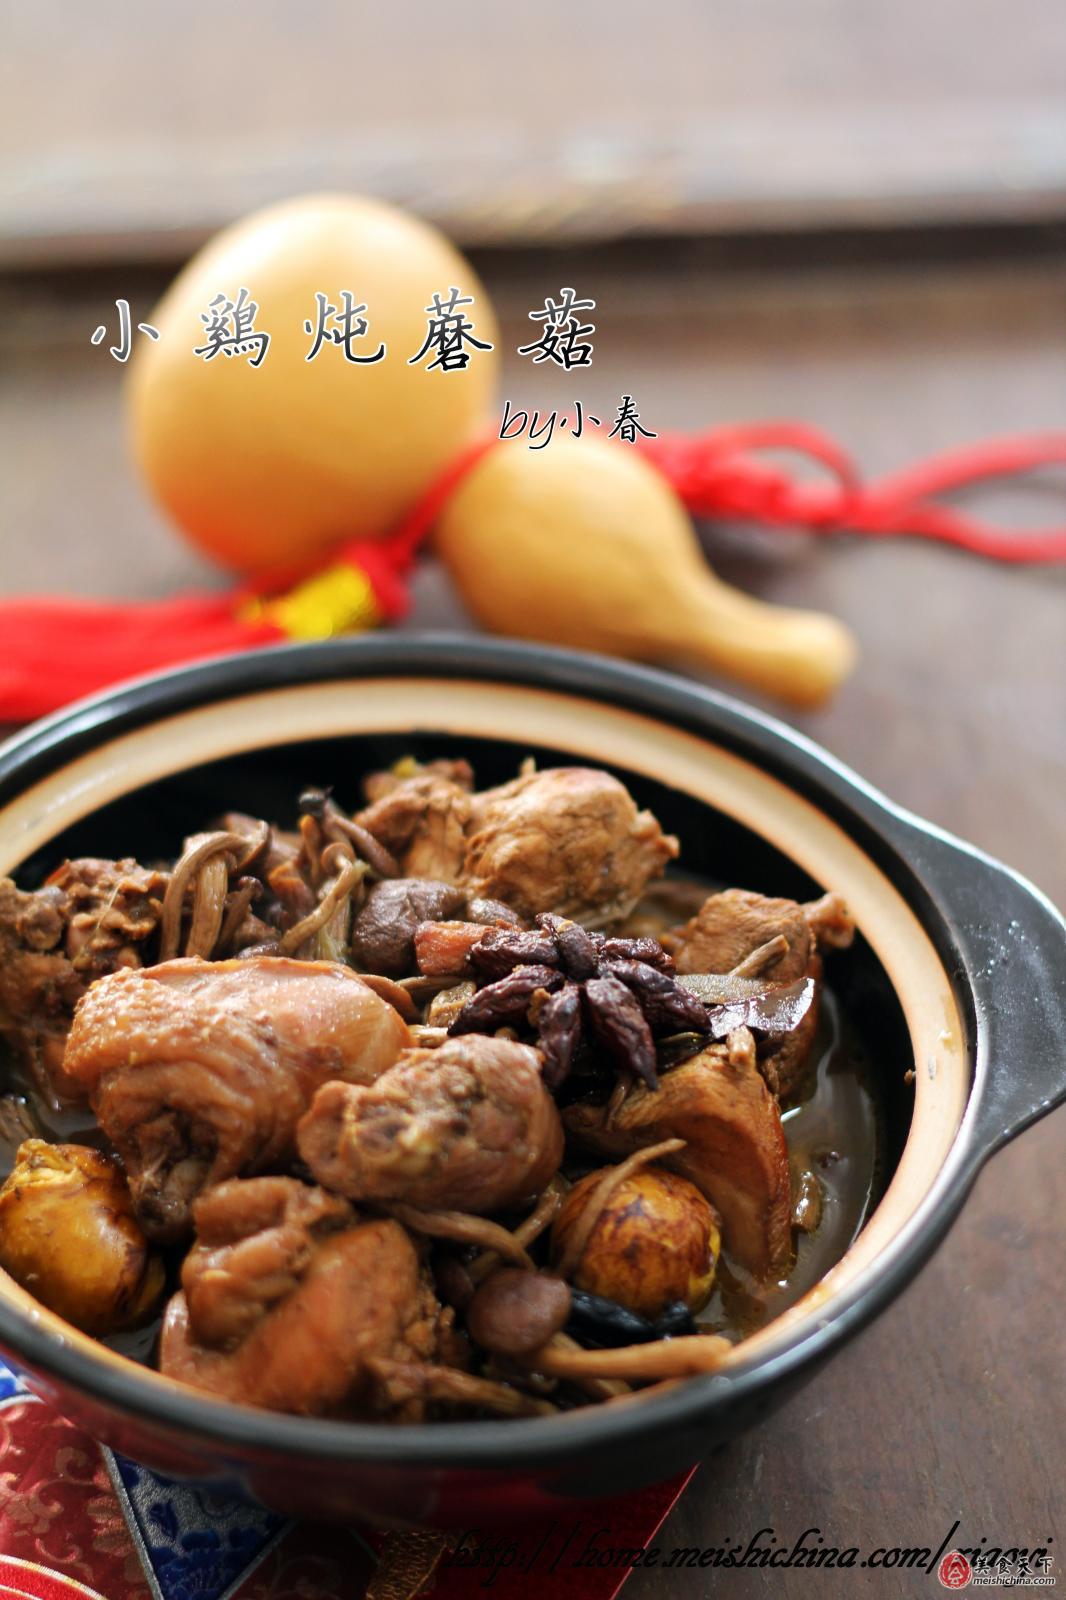 小鸡炖蘑菇粉条,小鸡炖蘑菇粉条的家常做法 - 美食杰小鸡炖蘑菇粉条做法大全